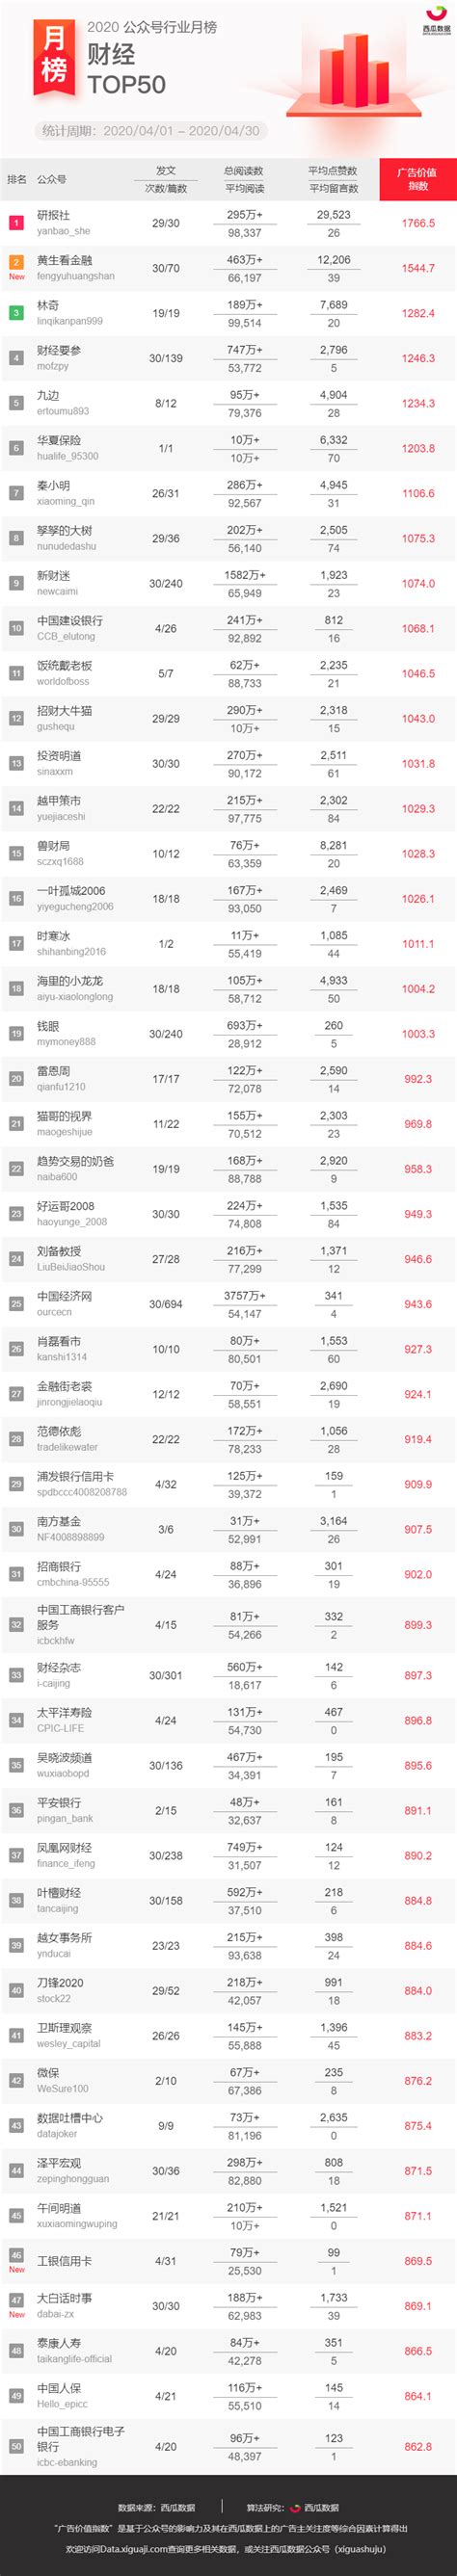 陕西省微信公众号影响力排行榜（2015年1月11-1月17日）_西部IT_威易网